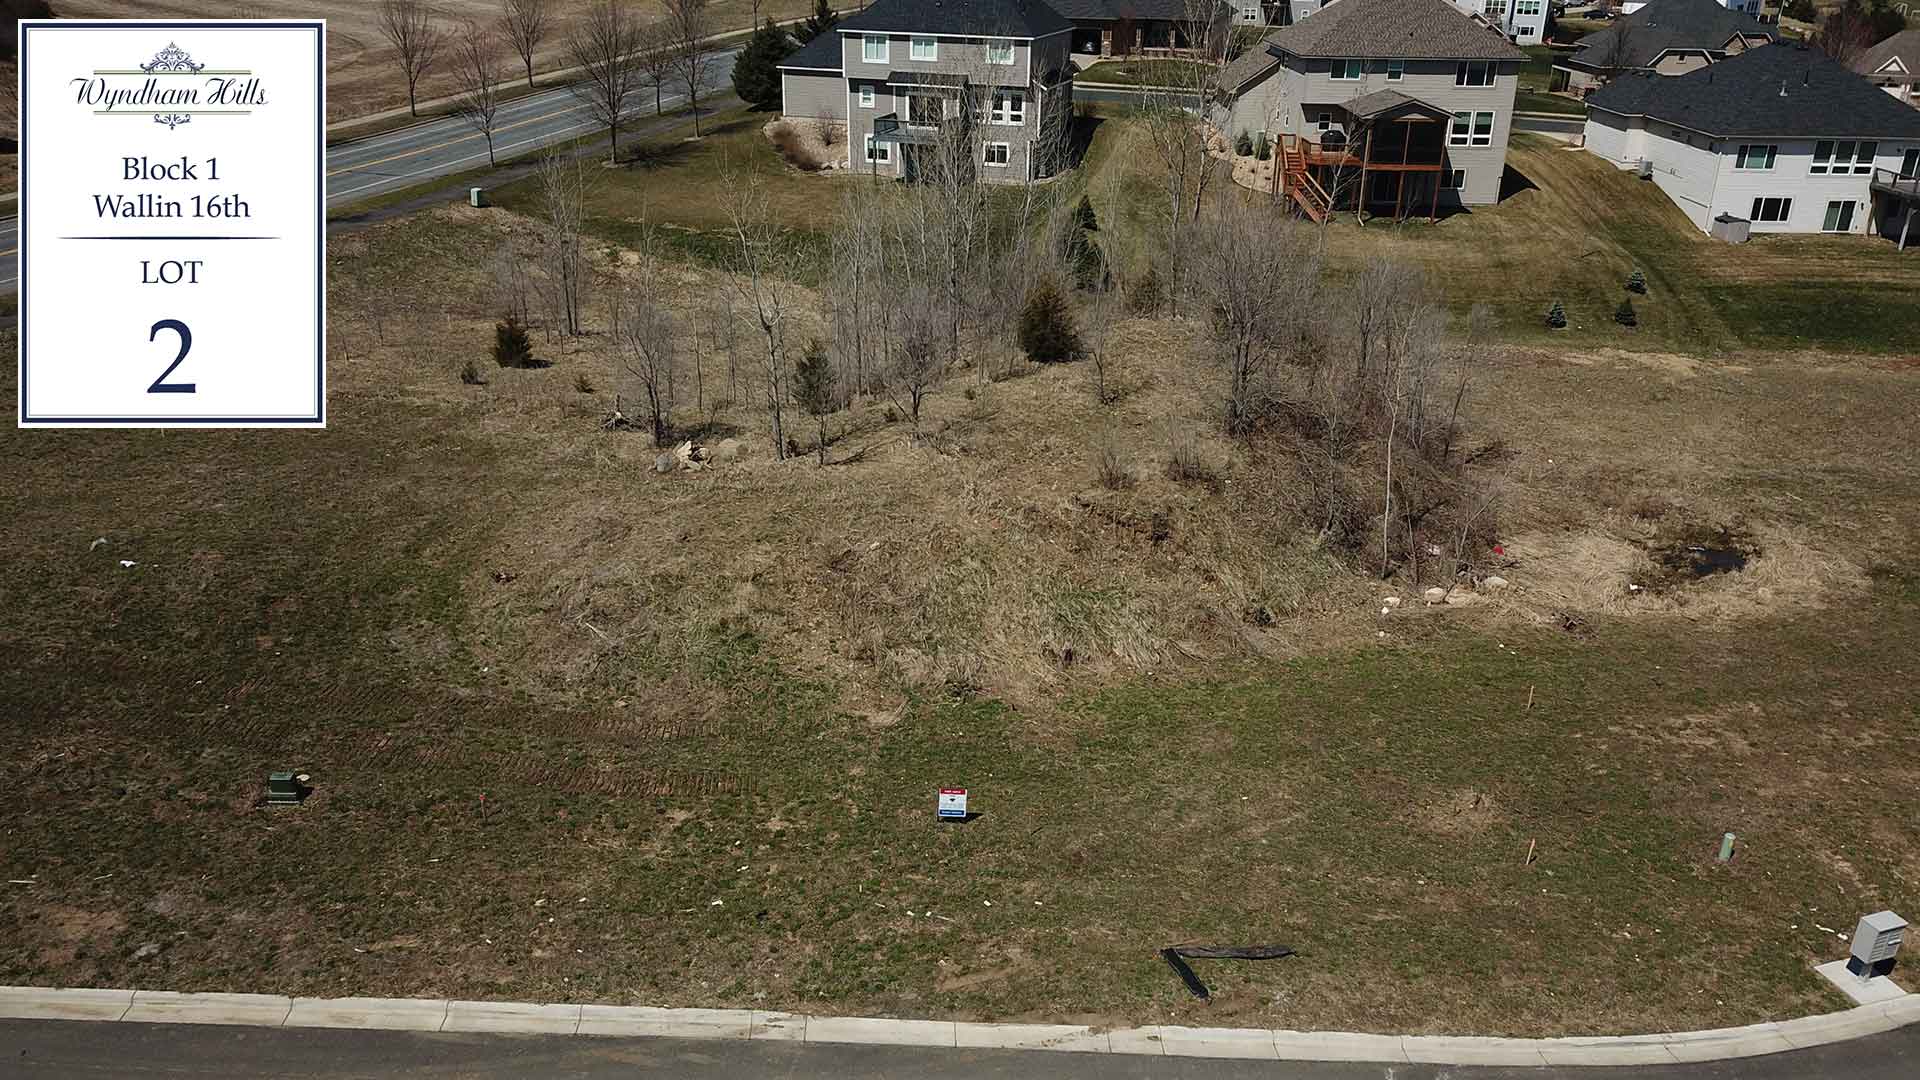 Wyndham Hills - Wallin 16th Lot 2 Block 1 Drone